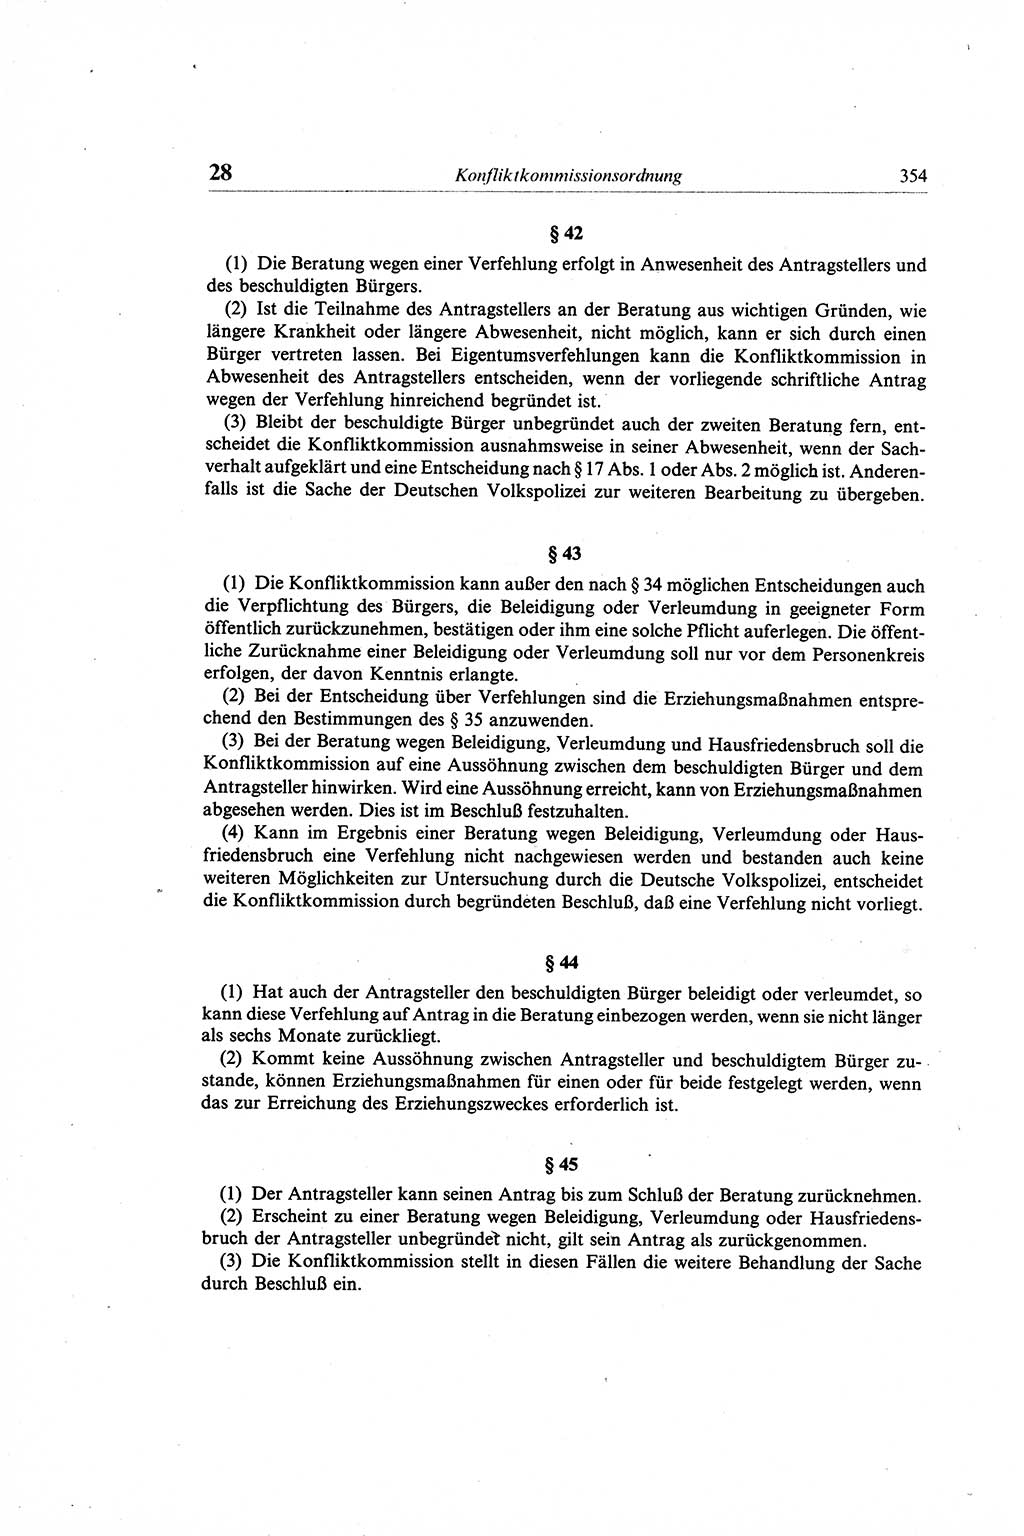 Gesetzbuch der Arbeit (GBA) und andere ausgewählte rechtliche Bestimmungen [Deutsche Demokratische Republik (DDR)] 1968, Seite 354 (GBA DDR 1968, S. 354)